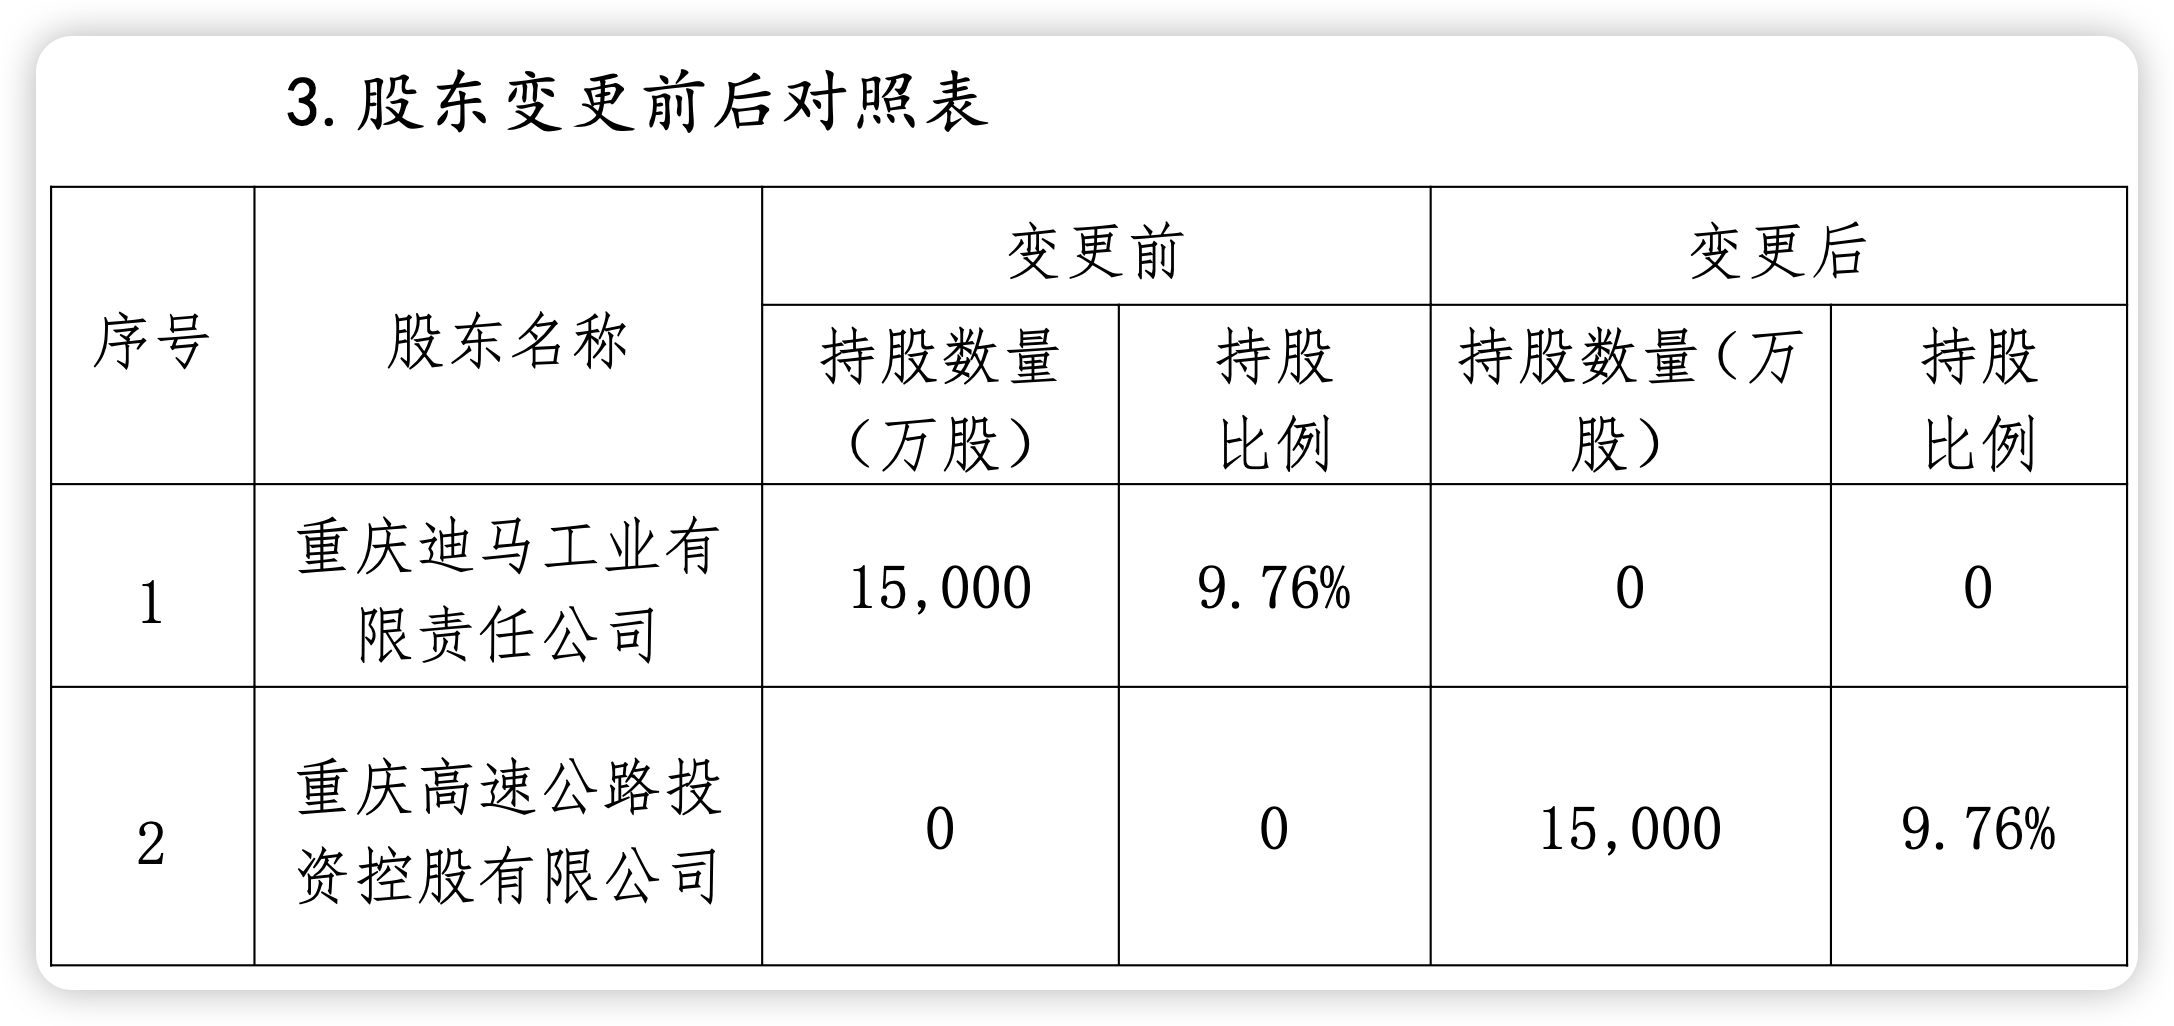 三峡人寿第五大股东清仓退场 重庆国资拟受让9.76%股权 曾经的“D等生” 能否迎转机？  第1张